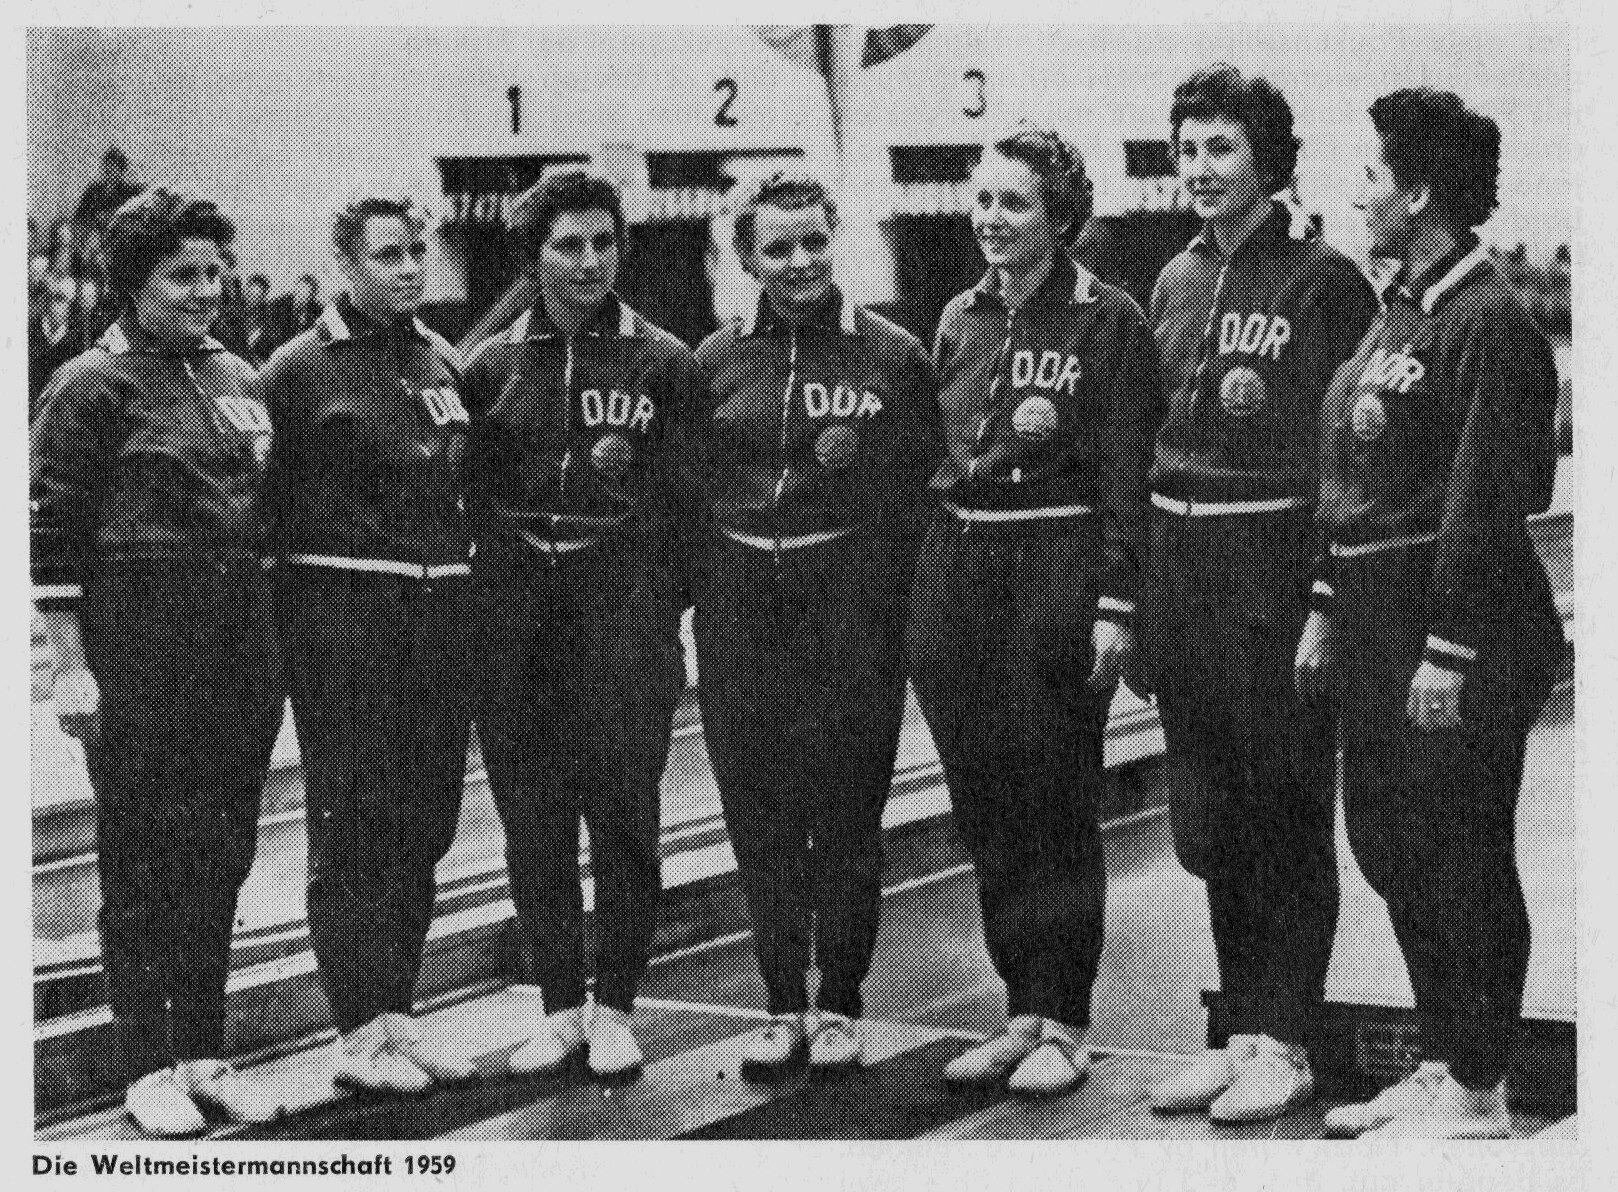 Die Mannschaft der DDR im Jahr 1959